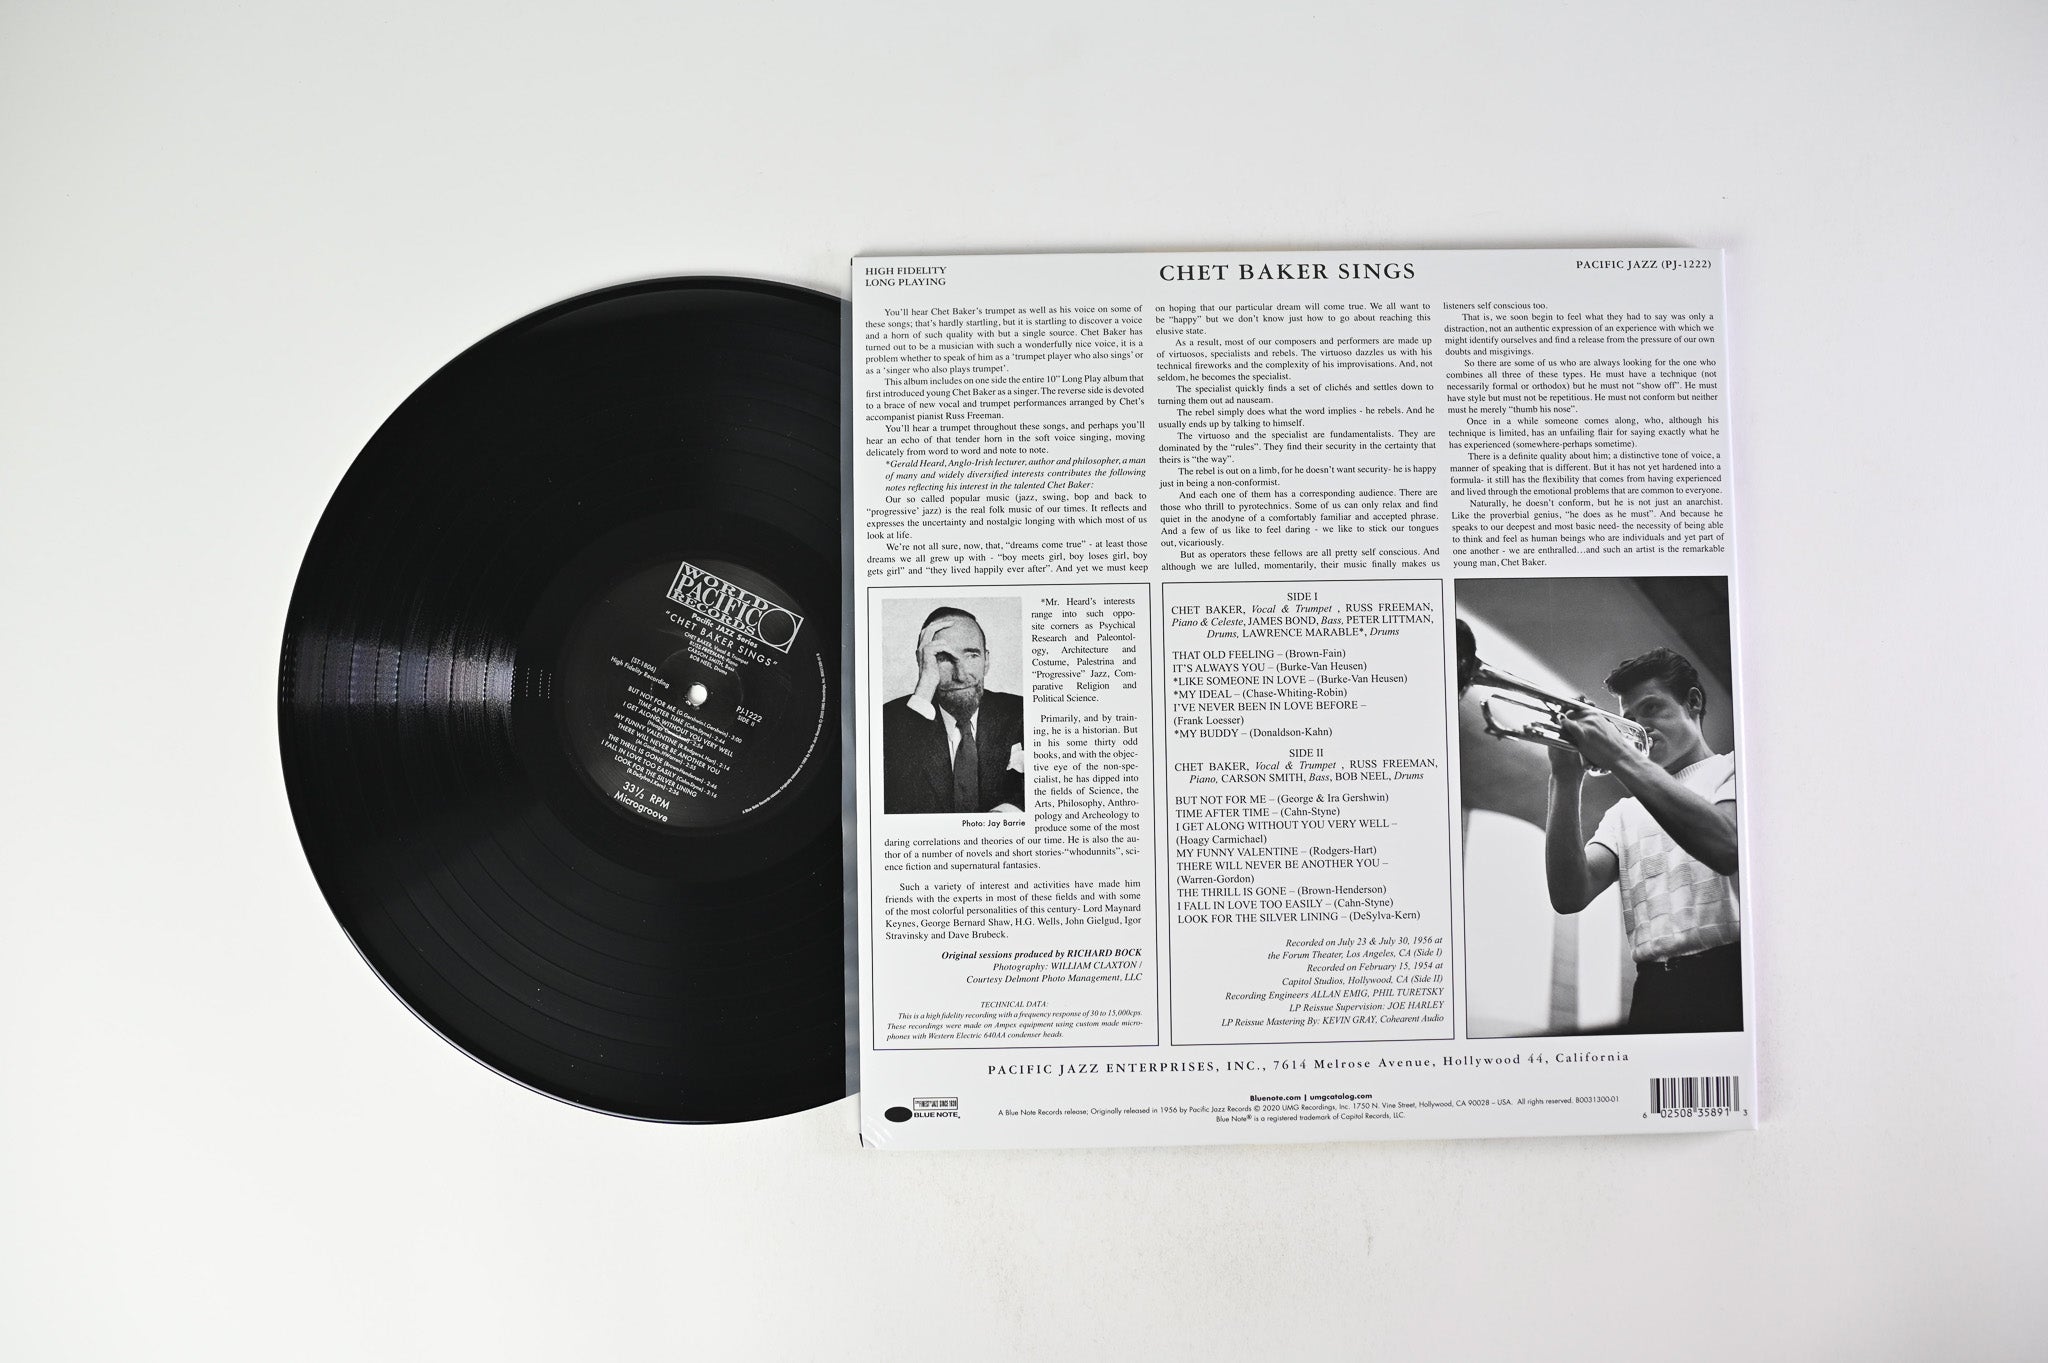 Chet Baker - Chet Baker Sings Mono Reissue on Blue Note Tone Poet Series